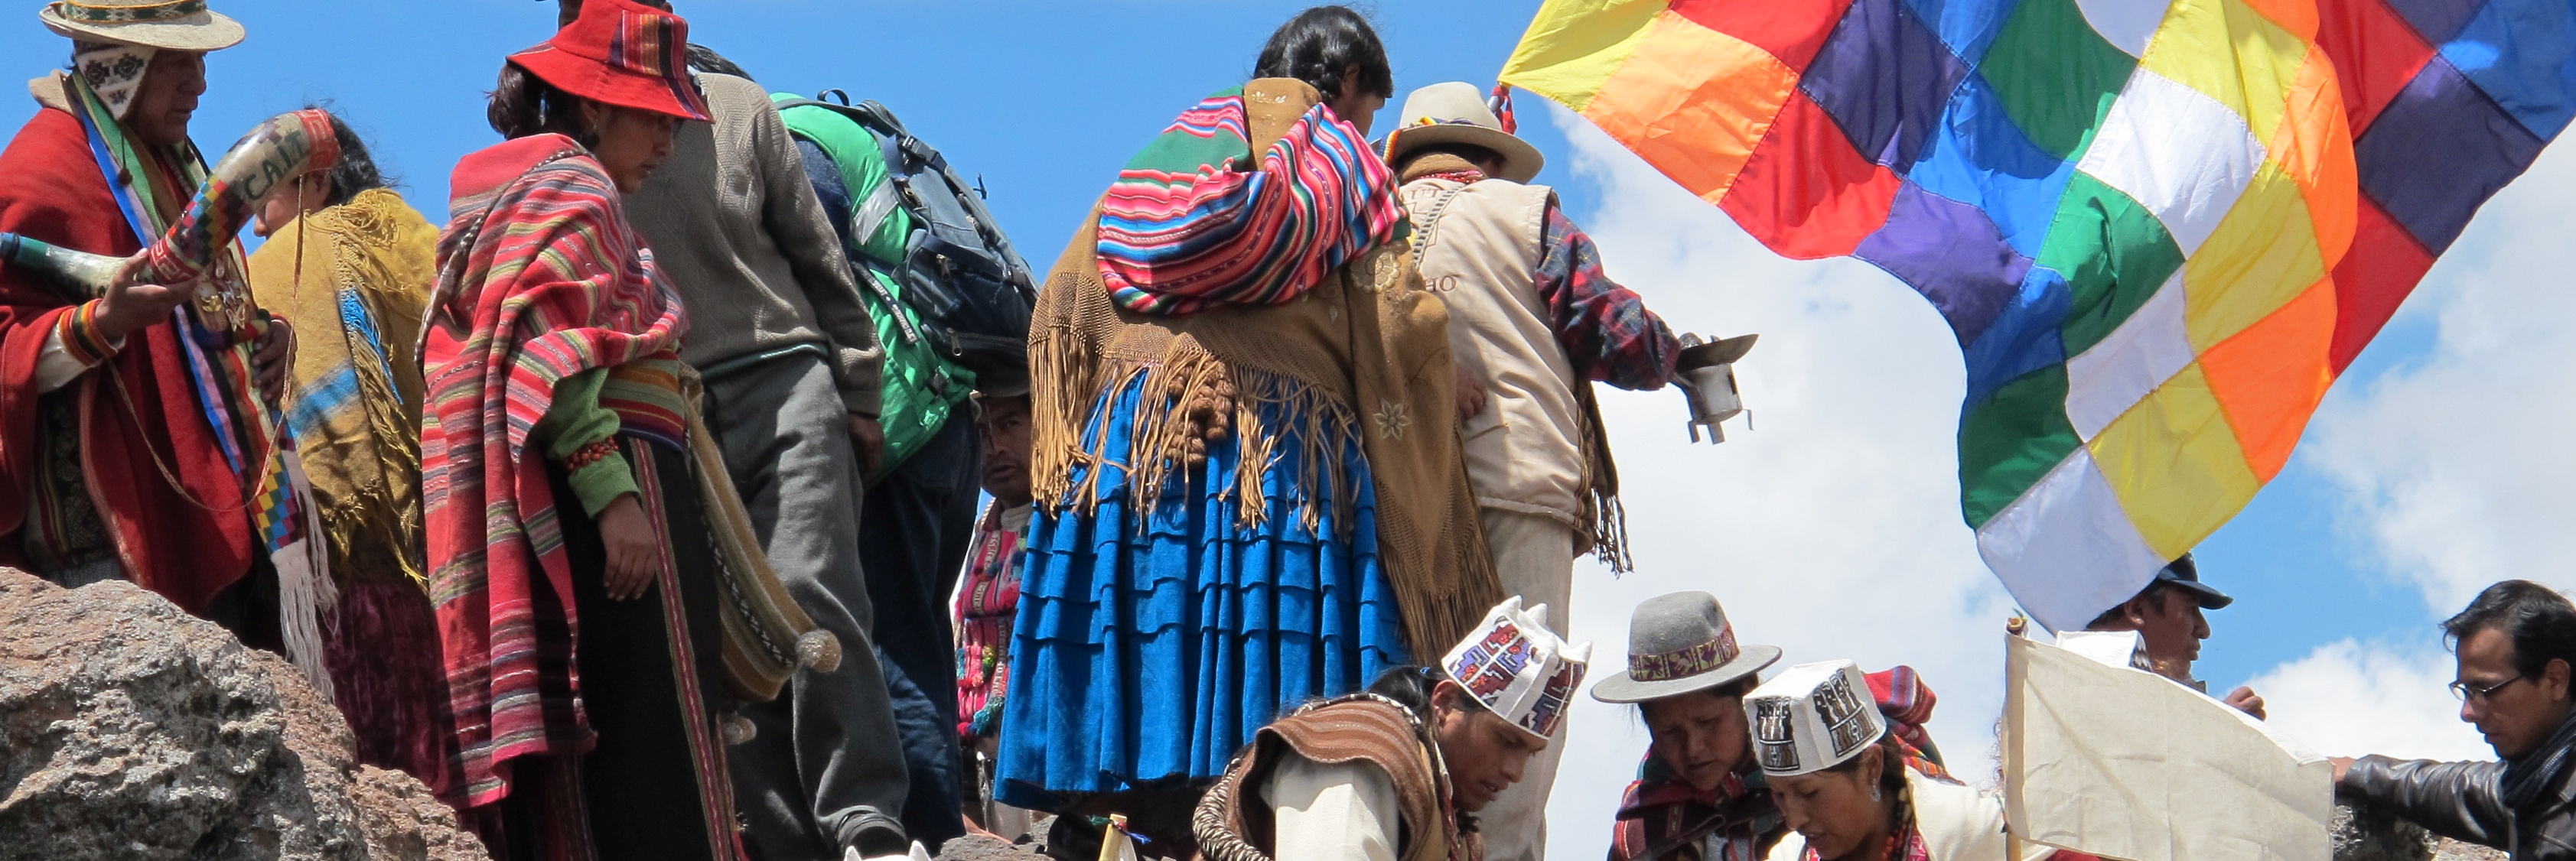 Indigene Versammlung am Titicacasee, Bolivien